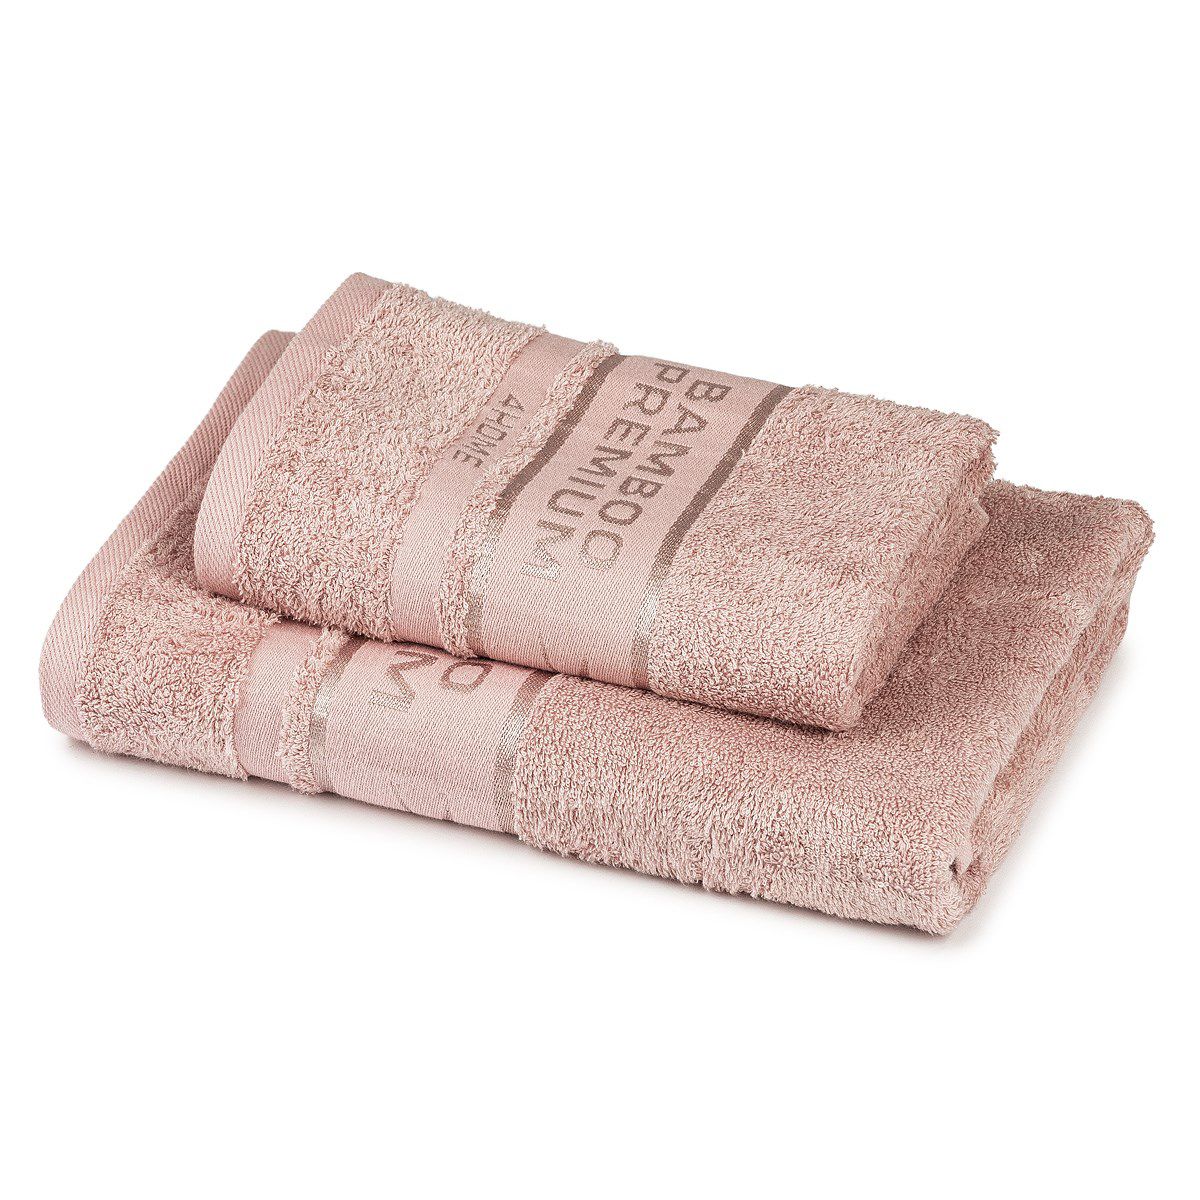 4Home Sada Bamboo Premium osuška a ručník růžová, 70 x 140 cm, 50 x 100 cm - 4home.cz